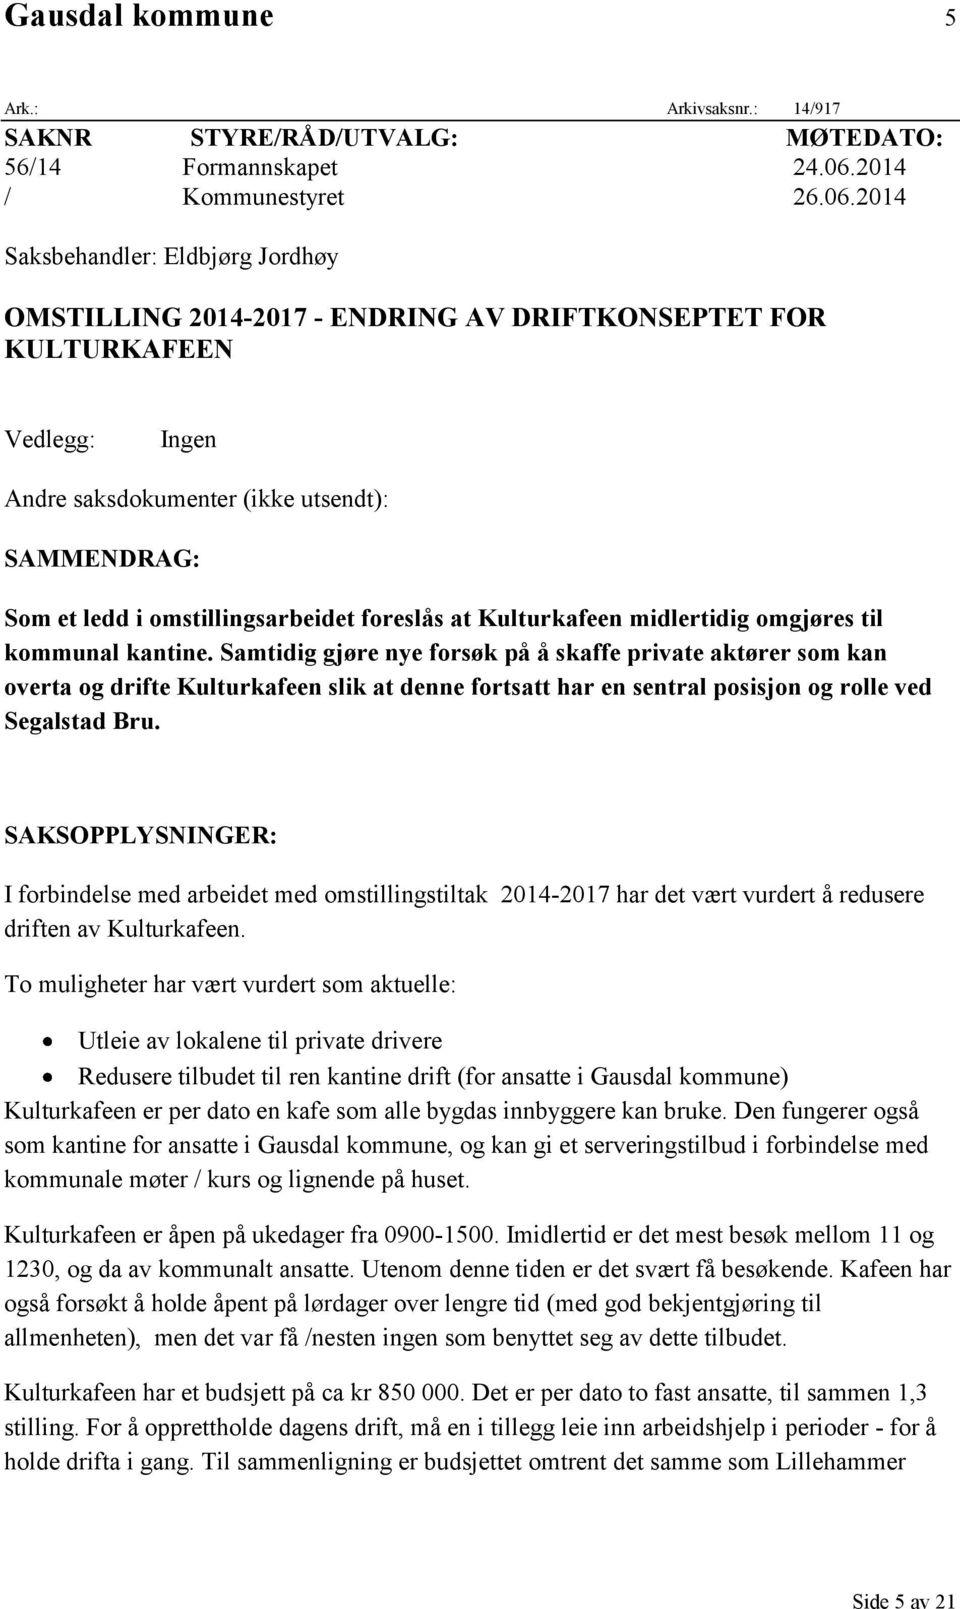 2014 Saksbehandler: Eldbjørg Jordhøy OMSTILLING 2014-2017 - ENDRING AV DRIFTKONSEPTET FOR KULTURKAFEEN Vedlegg: Ingen Andre saksdokumenter (ikke utsendt): SAMMENDRAG: Som et ledd i